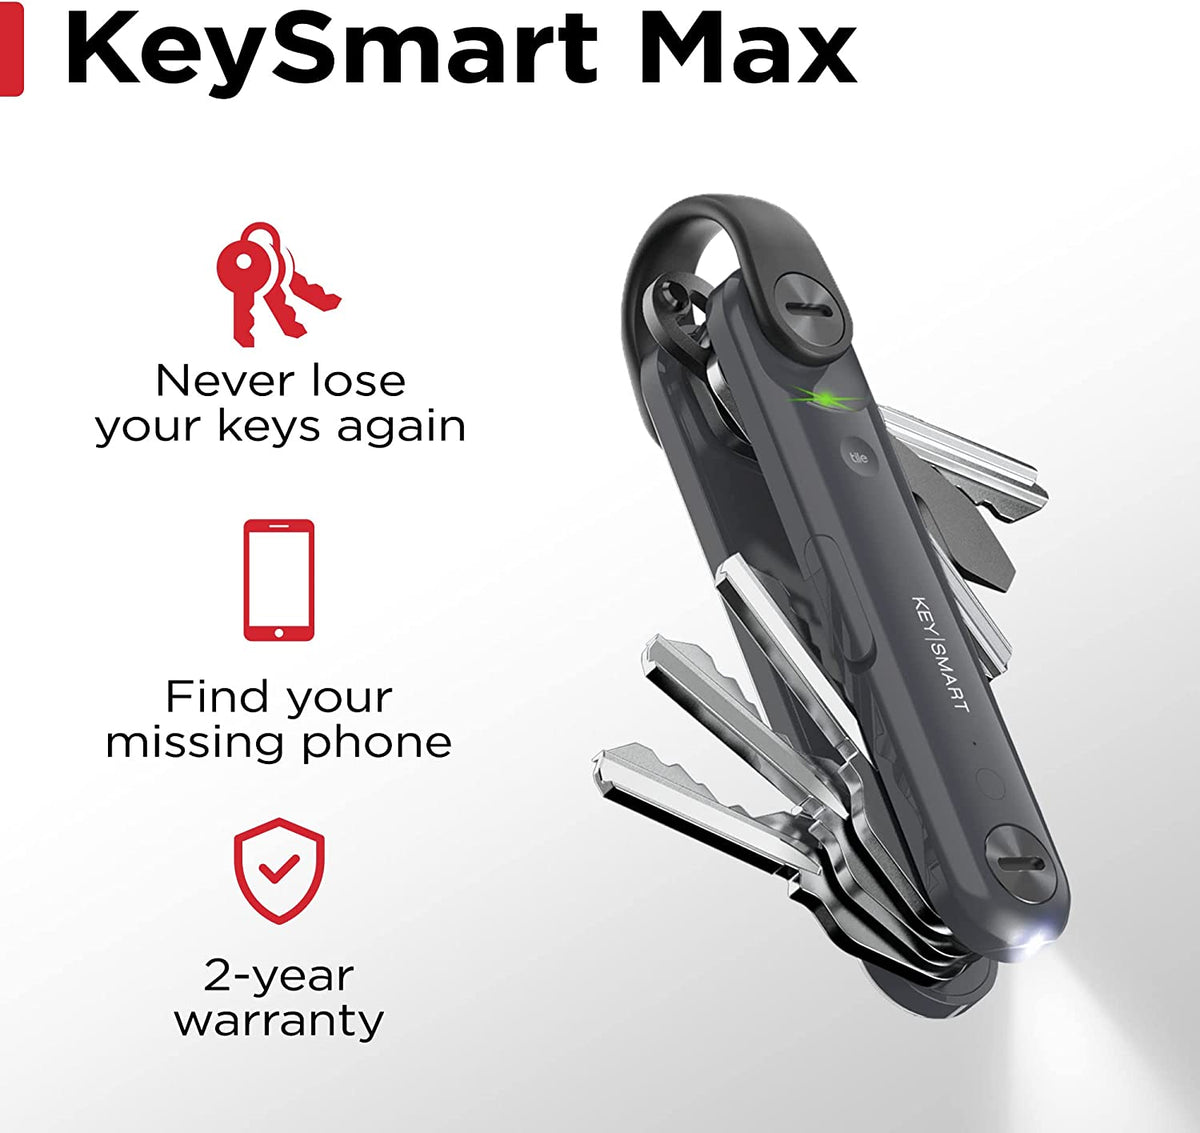 KeySmart Pro Key Holder in Slate – White Pier Gifts